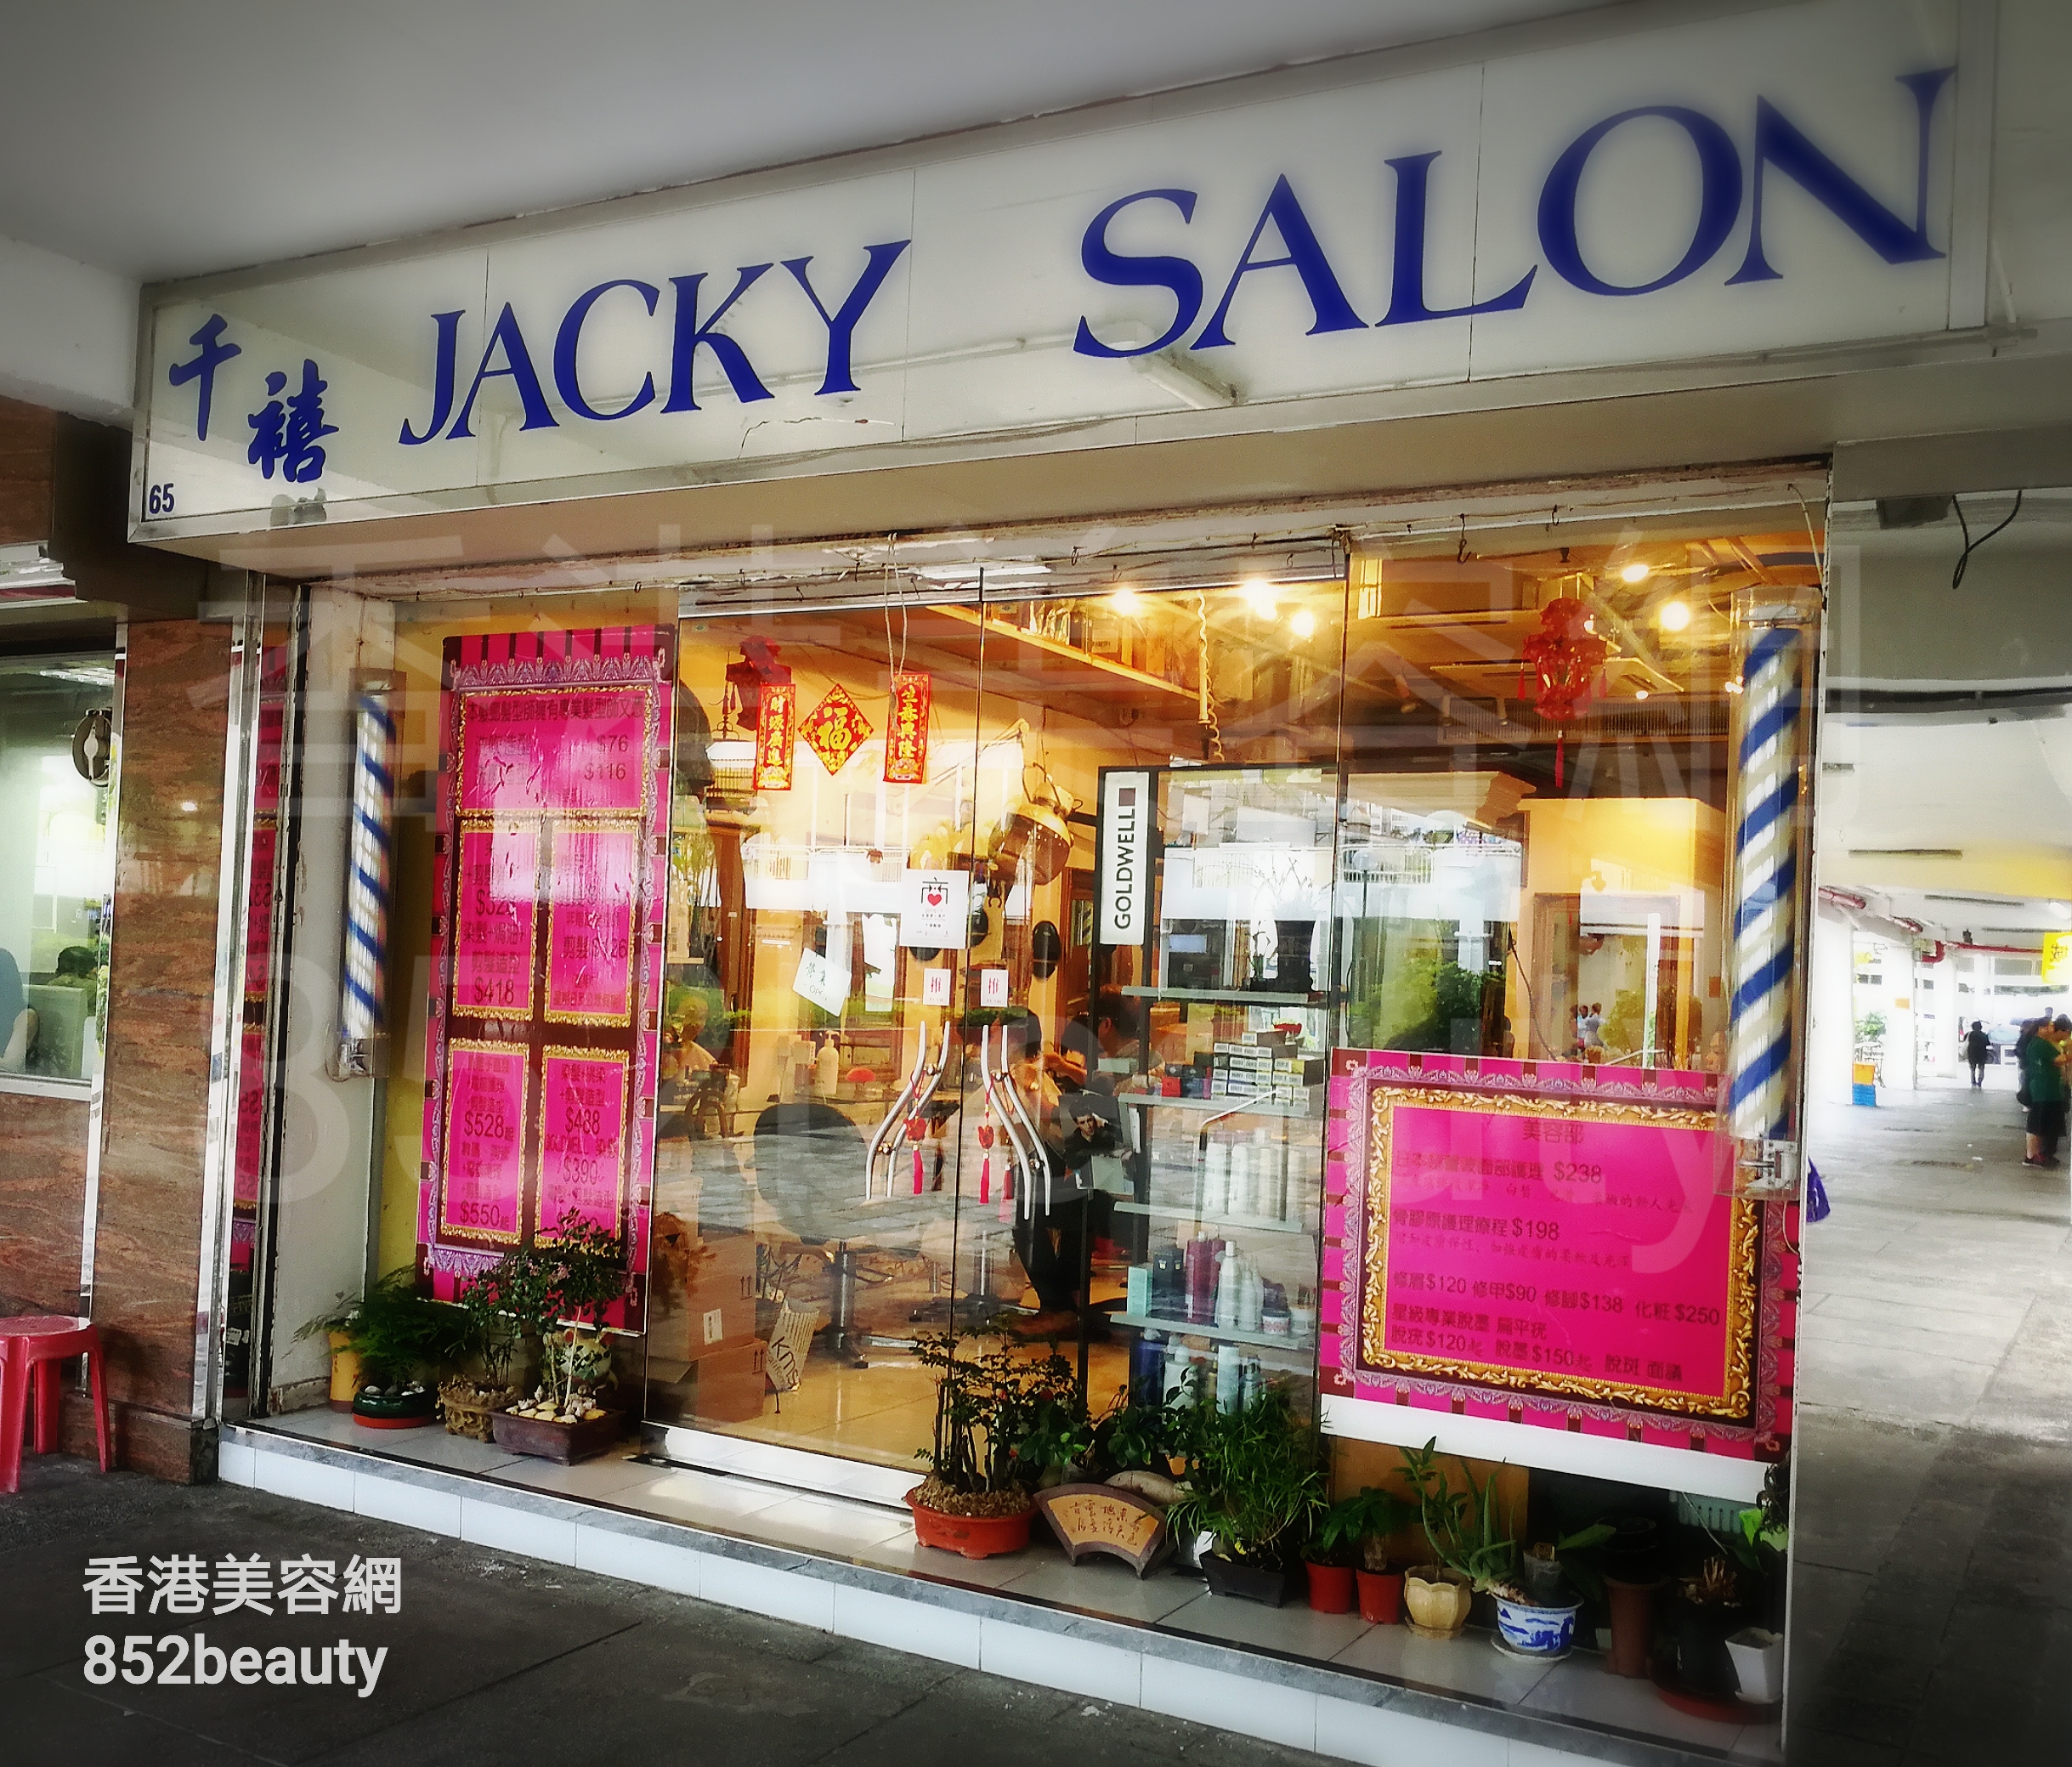 香港美容網 Hong Kong Beauty Salon 美容院 / 美容師: JACKY SALON